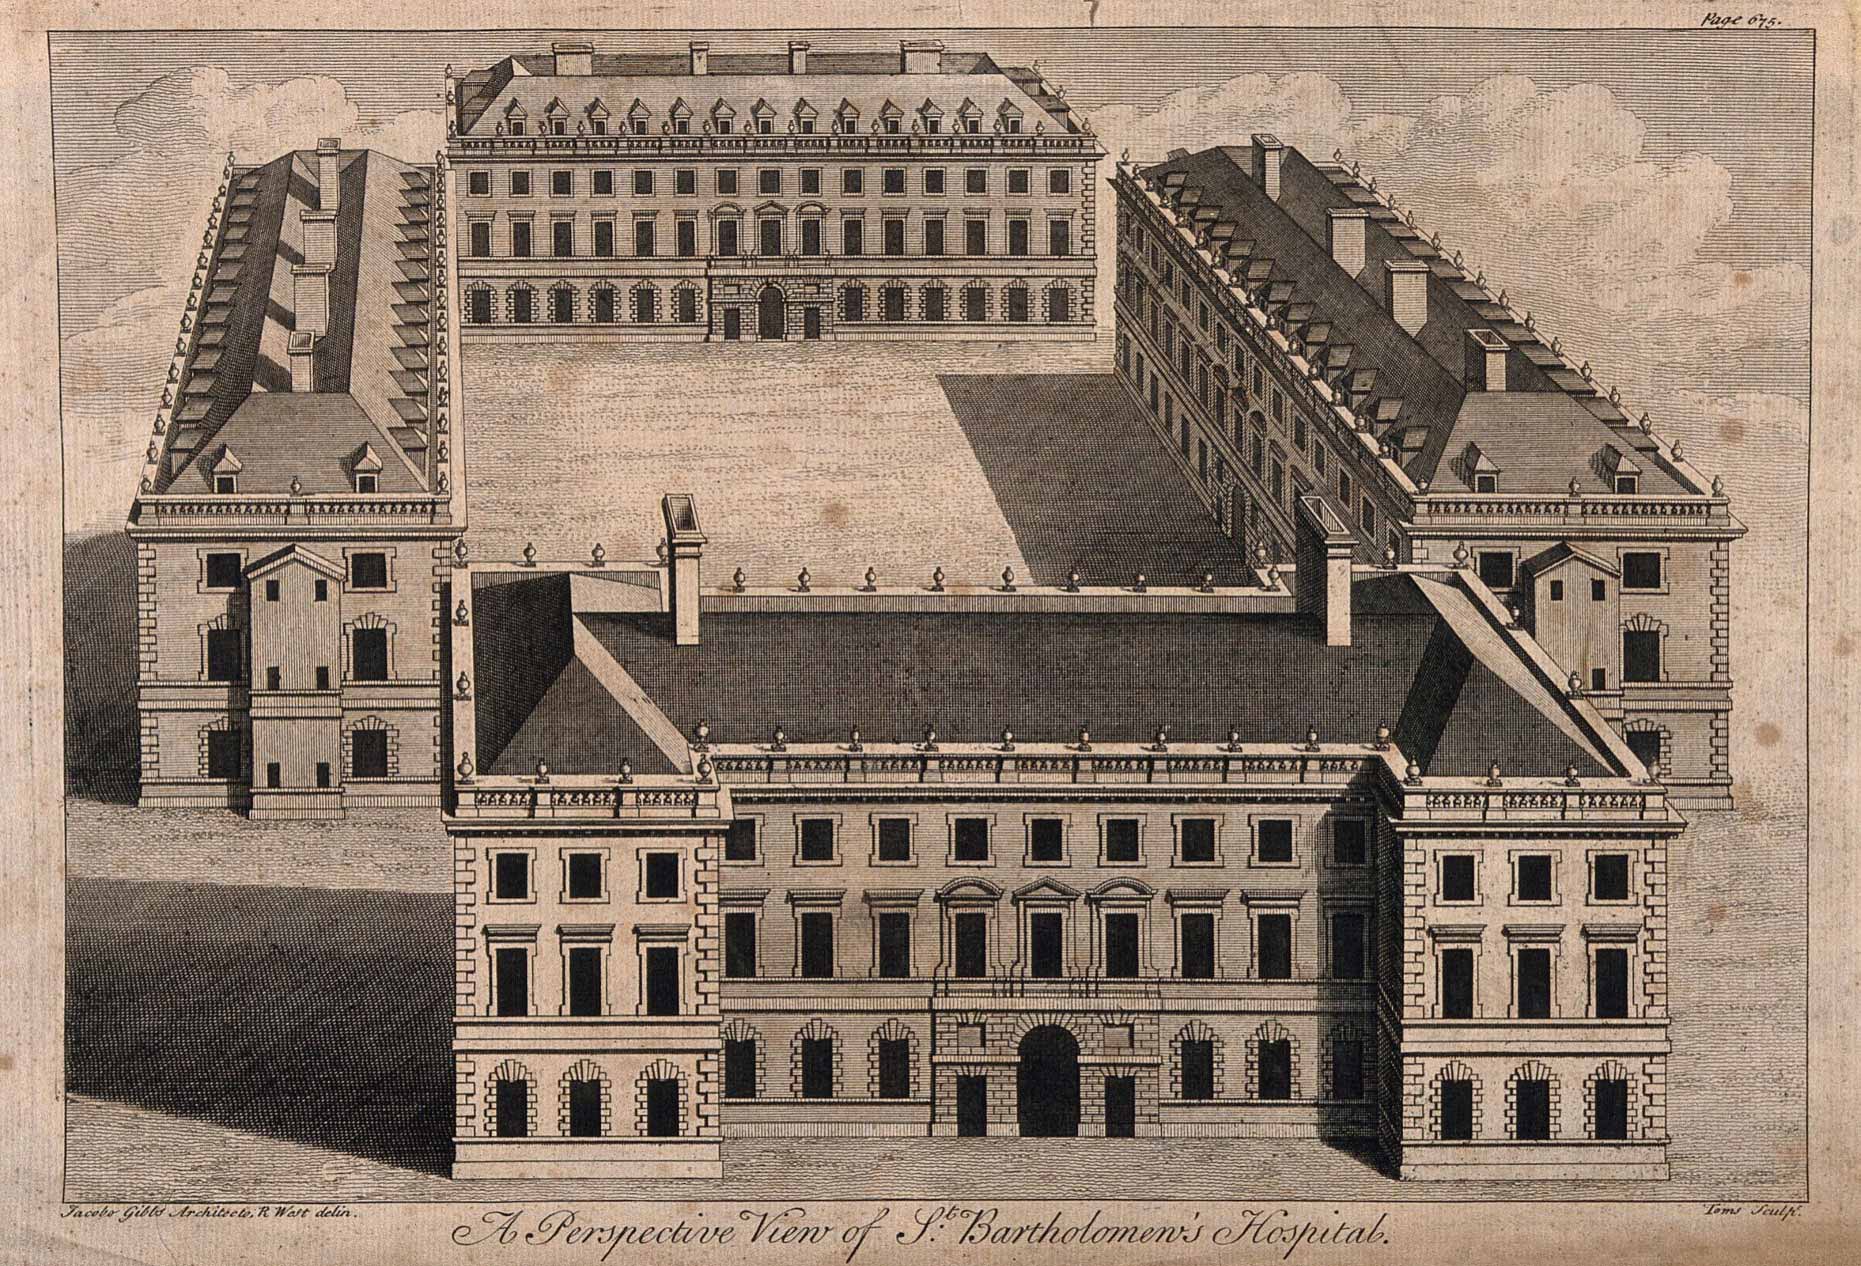 Perspective on James Gibbs design for St Bartholomew's Hospital